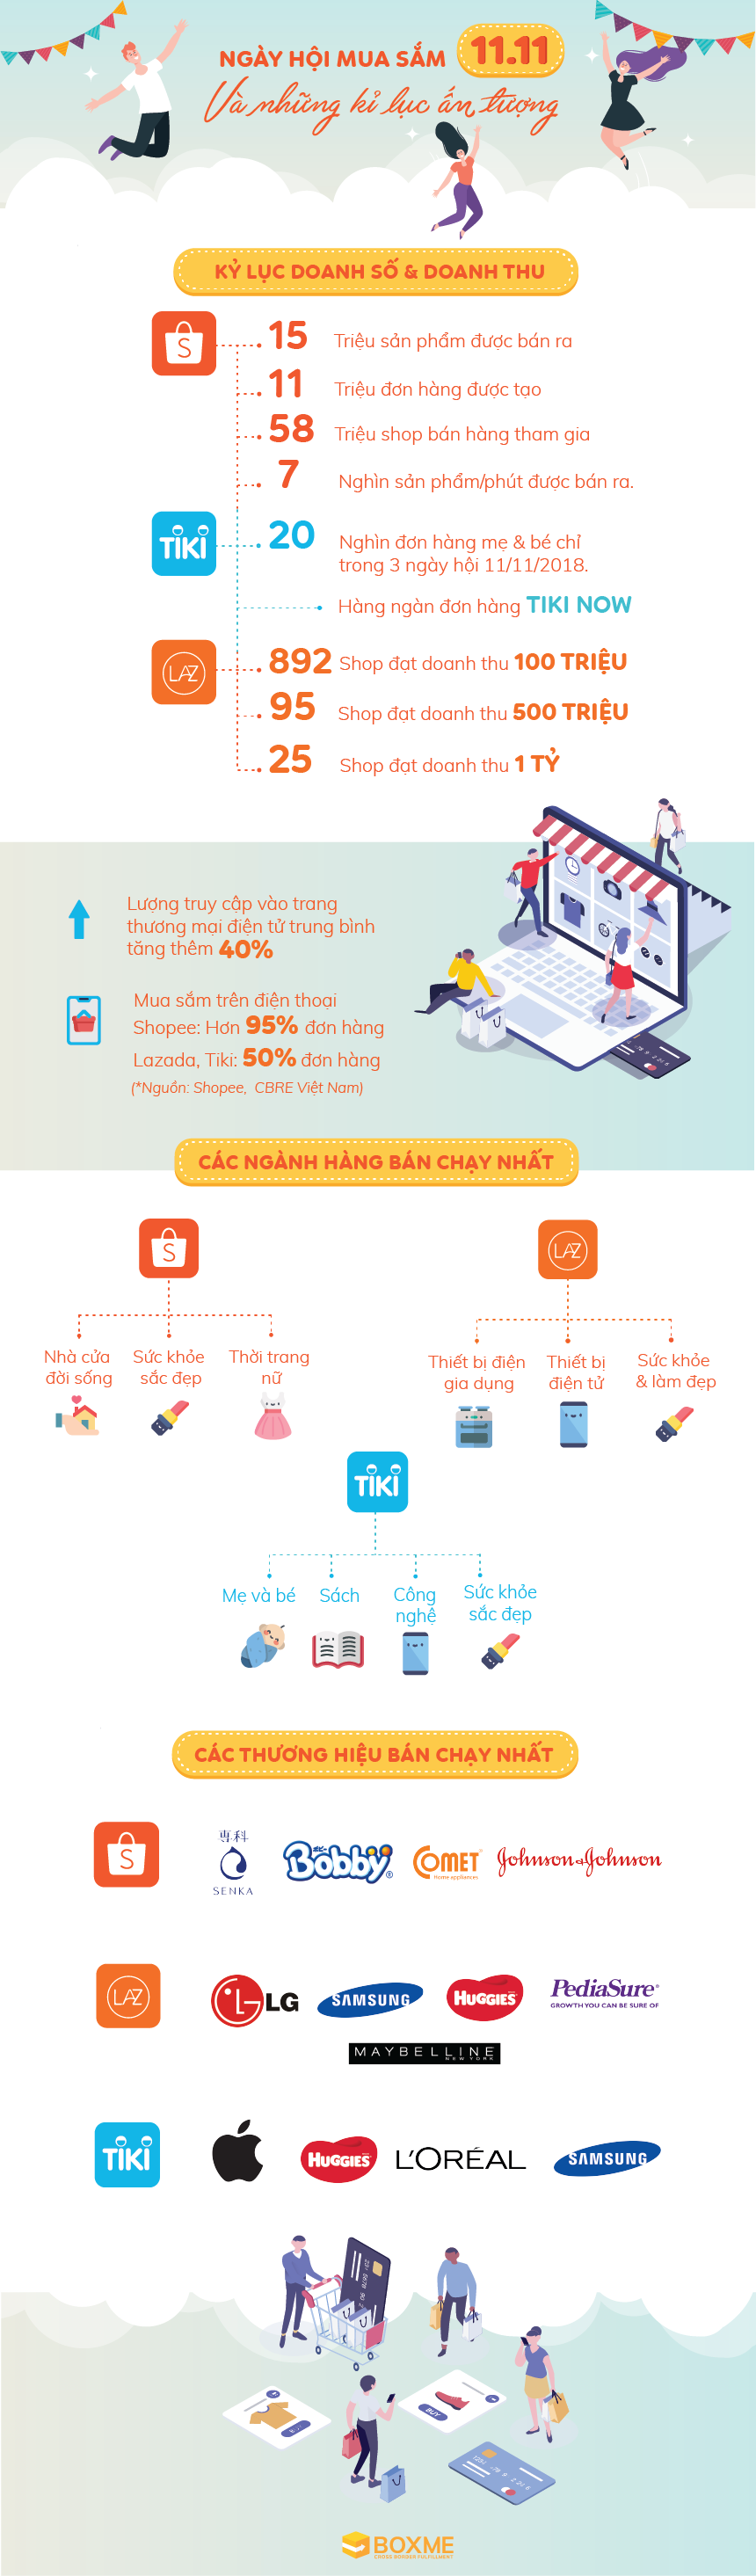 [Infographic] Thống kê số liệu về ngày hội mua sắm Single Day 11/11/2018 của các sàn thương mại điện tử Việt Nam